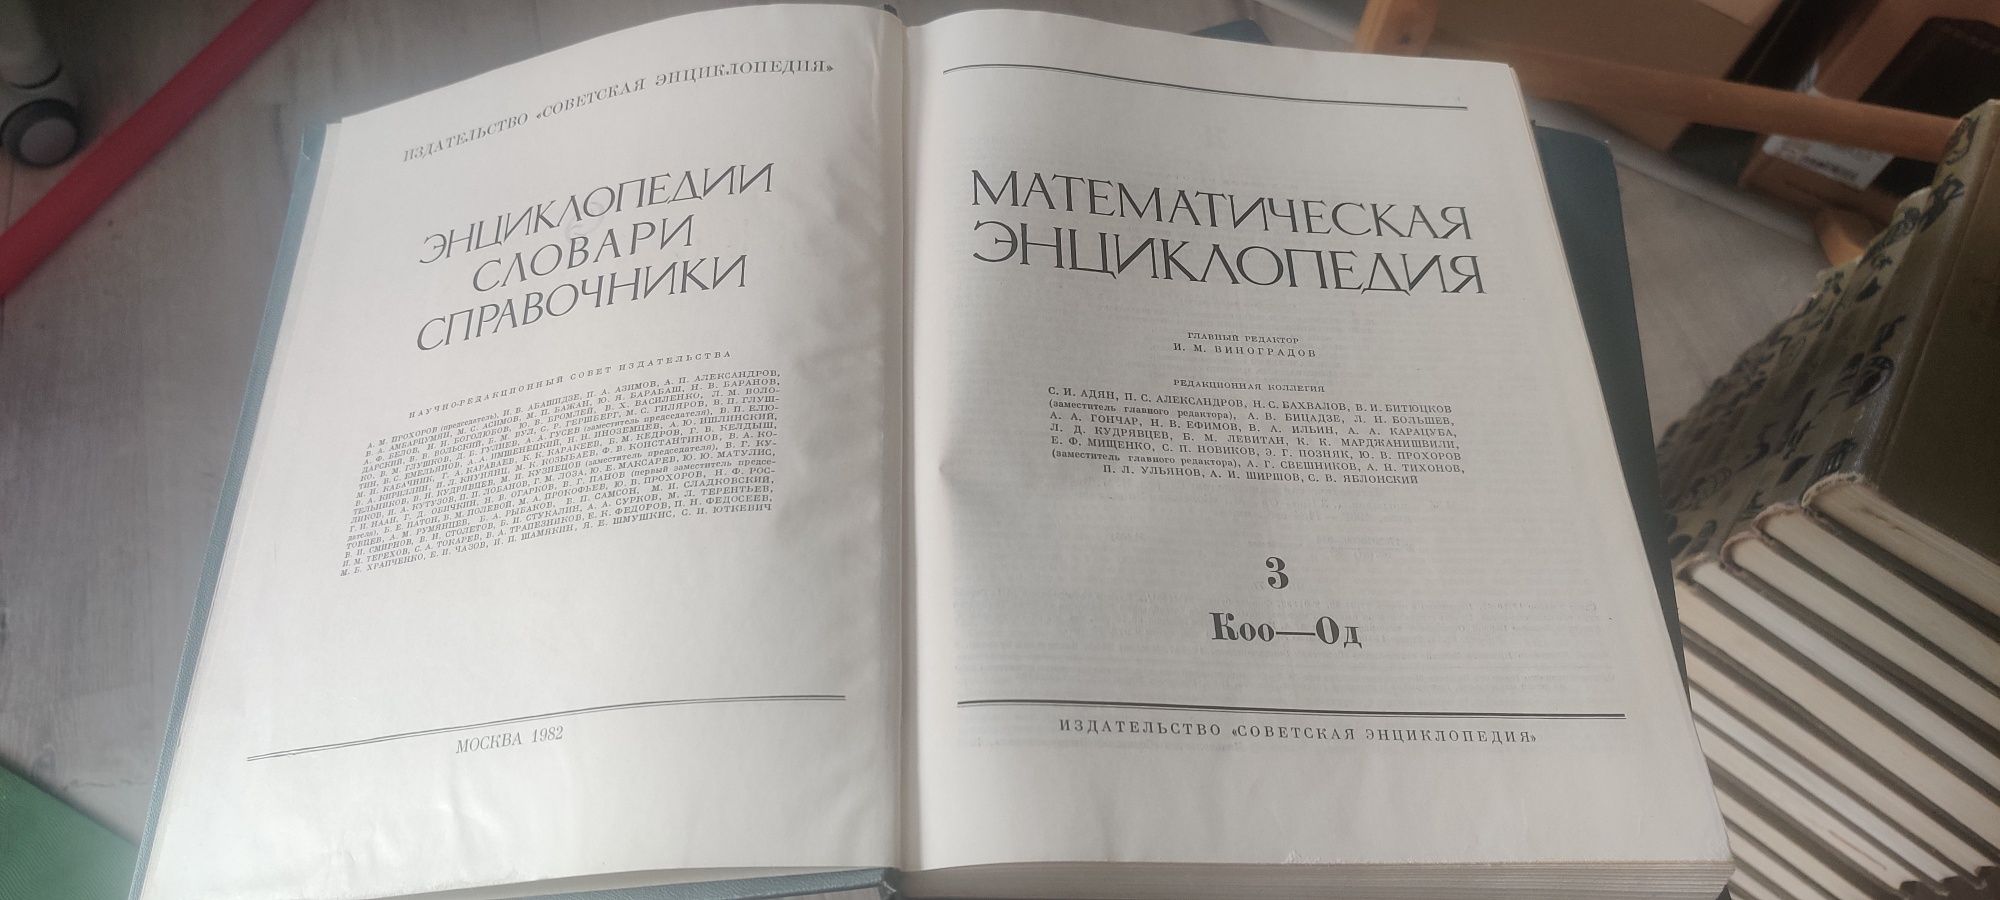 Математическая энциклопедия 1982